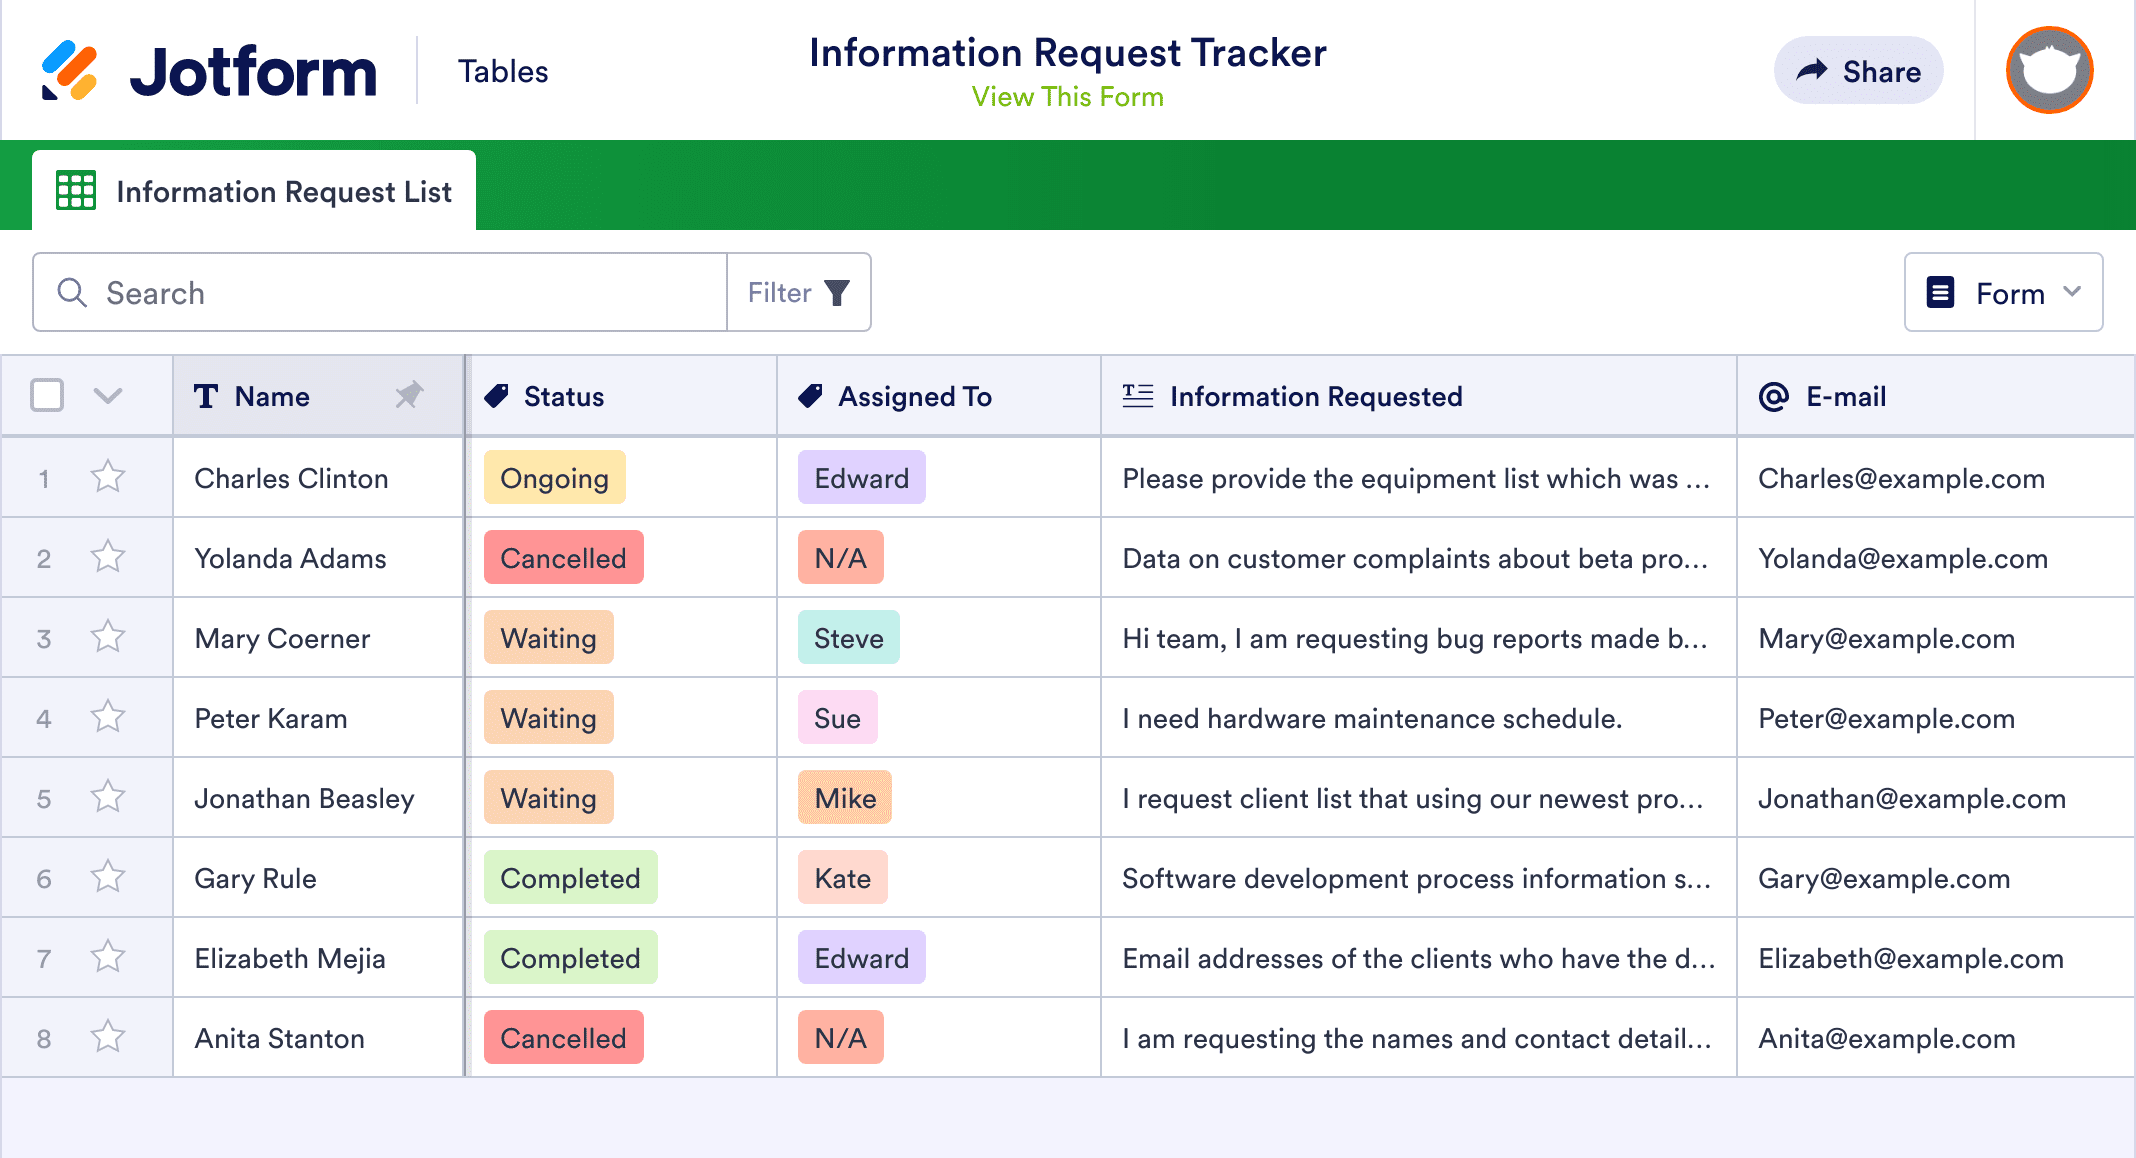 Information Request Tracker